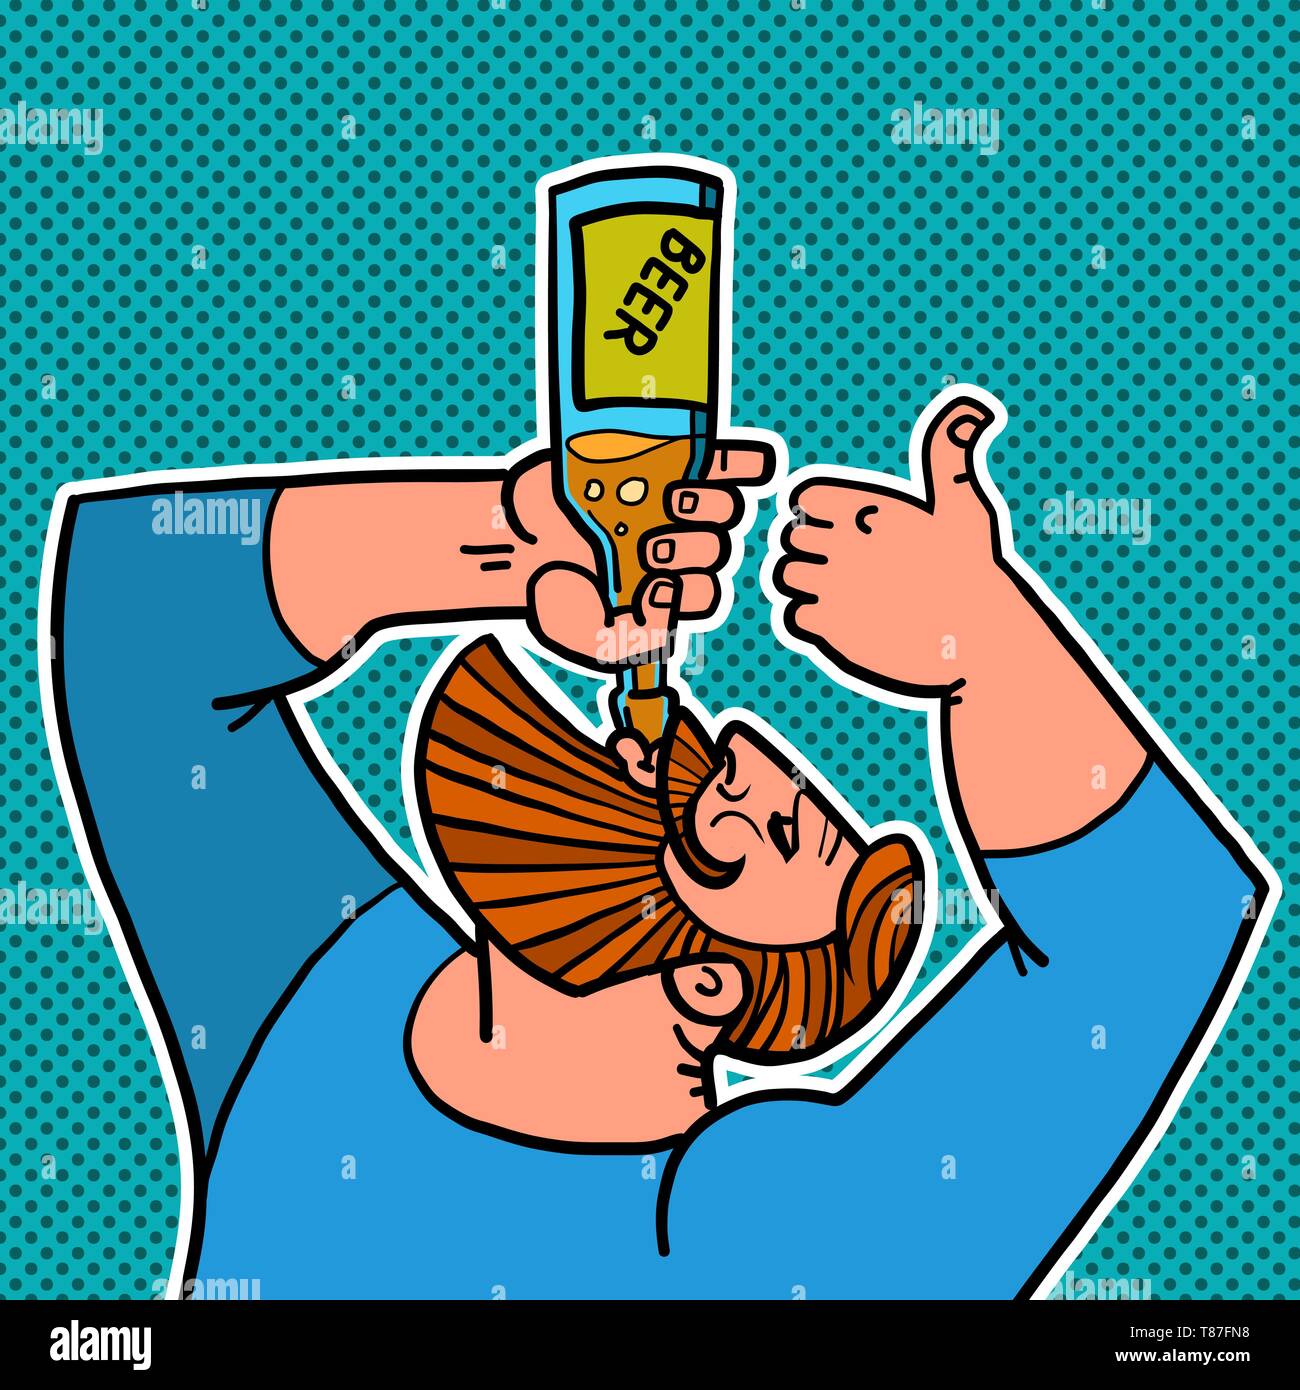 Homme barbu de boire une bouteille de bière. Bande dessinée caricature dessin illustration rétro pop art Illustration de Vecteur